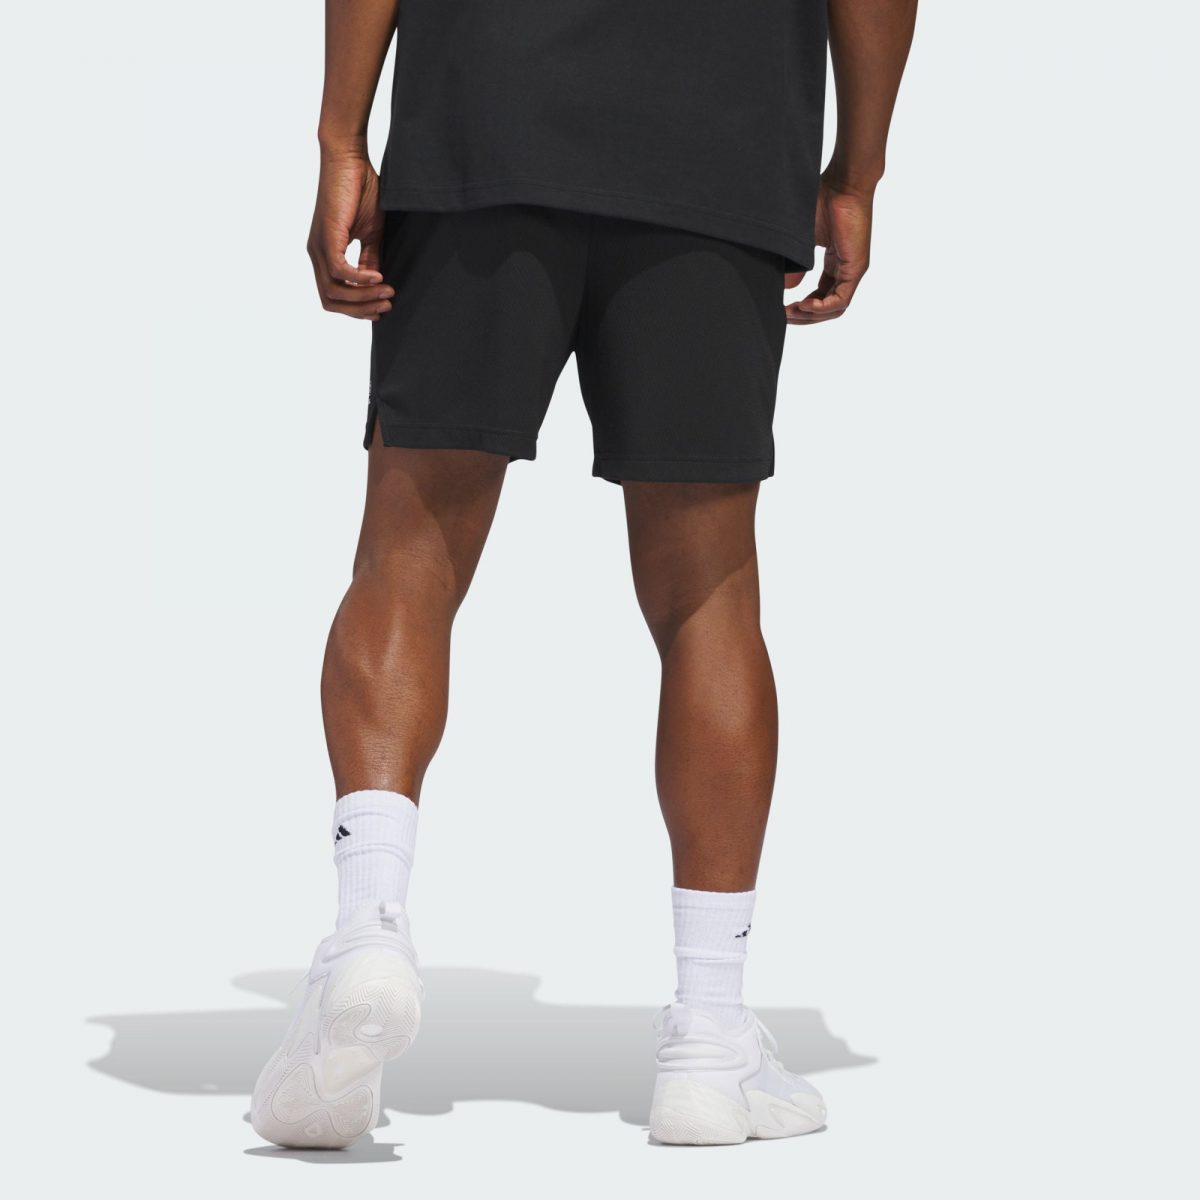 Мужские шорты adidas SELECT SHORTS черные фотография